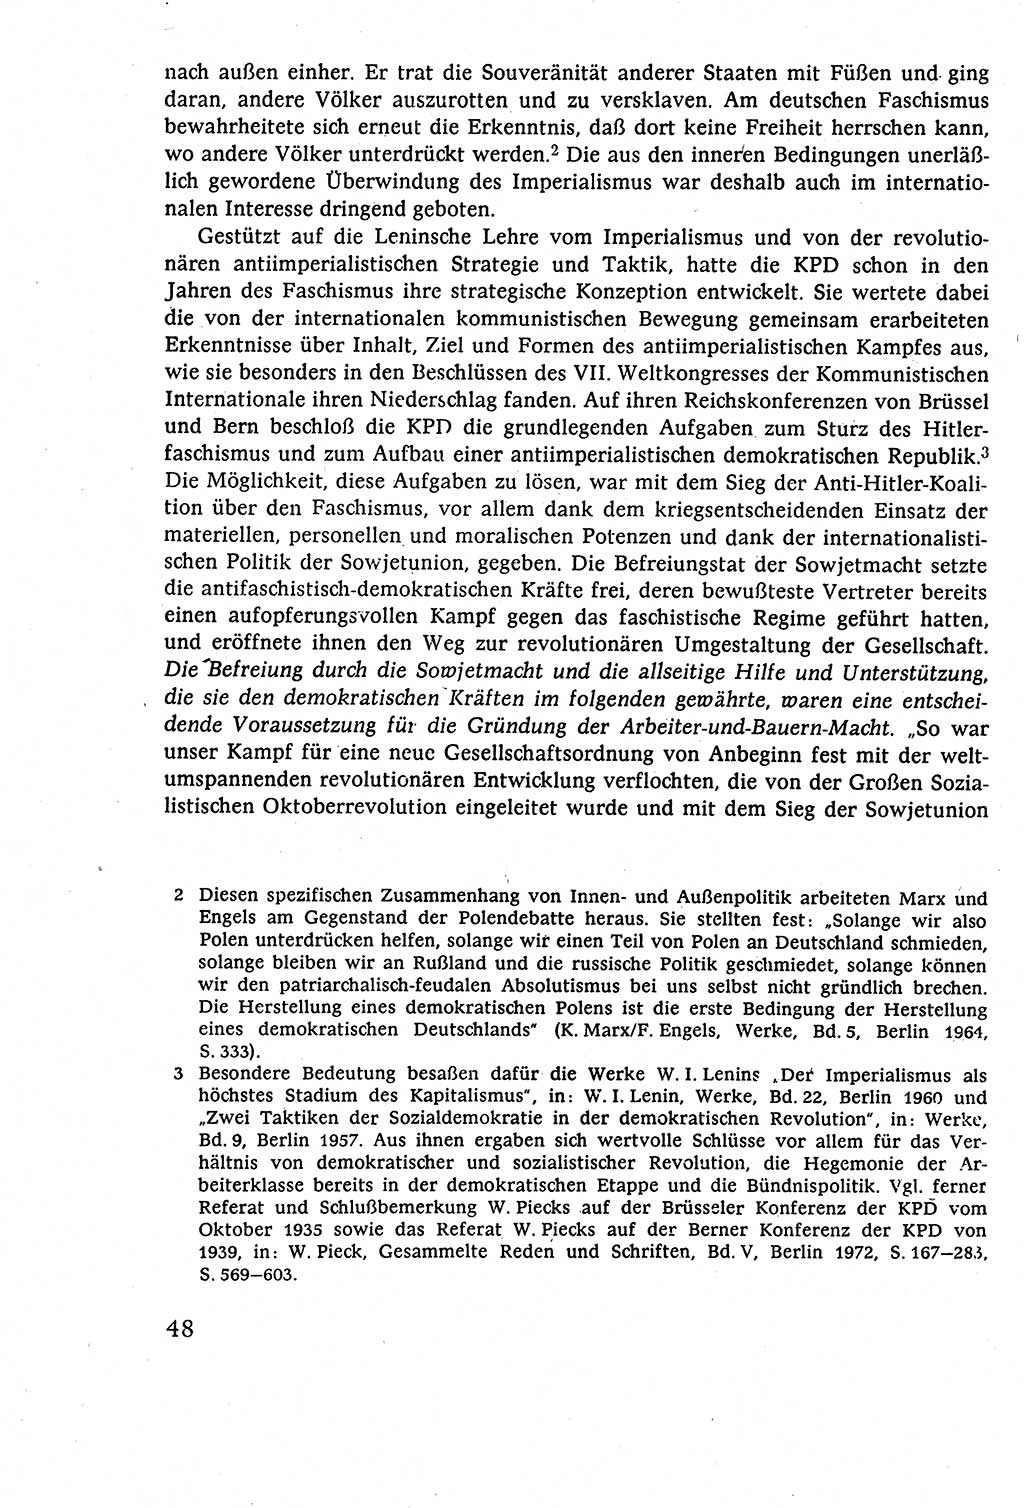 Staatsrecht der DDR (Deutsche Demokratische Republik), Lehrbuch 1977, Seite 48 (St.-R. DDR Lb. 1977, S. 48)